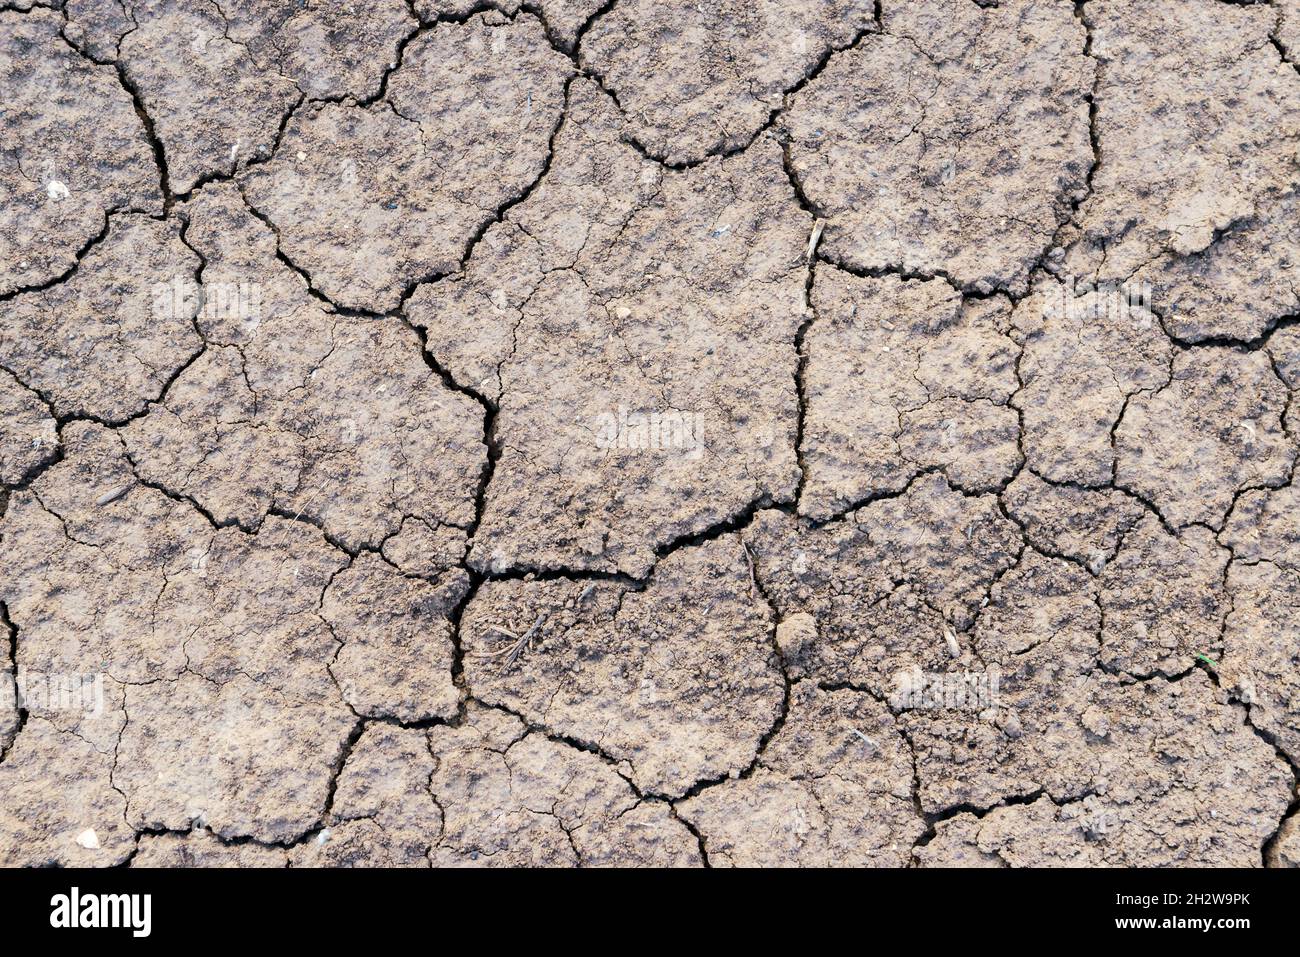 Gerissene Erde Textur des Bodens, gebrochene und raue Oberfläche grauen Lehmboden in der Sommersaison, gerissene Erdgeschoss auf Dürre Umgebung und ho Stockfoto